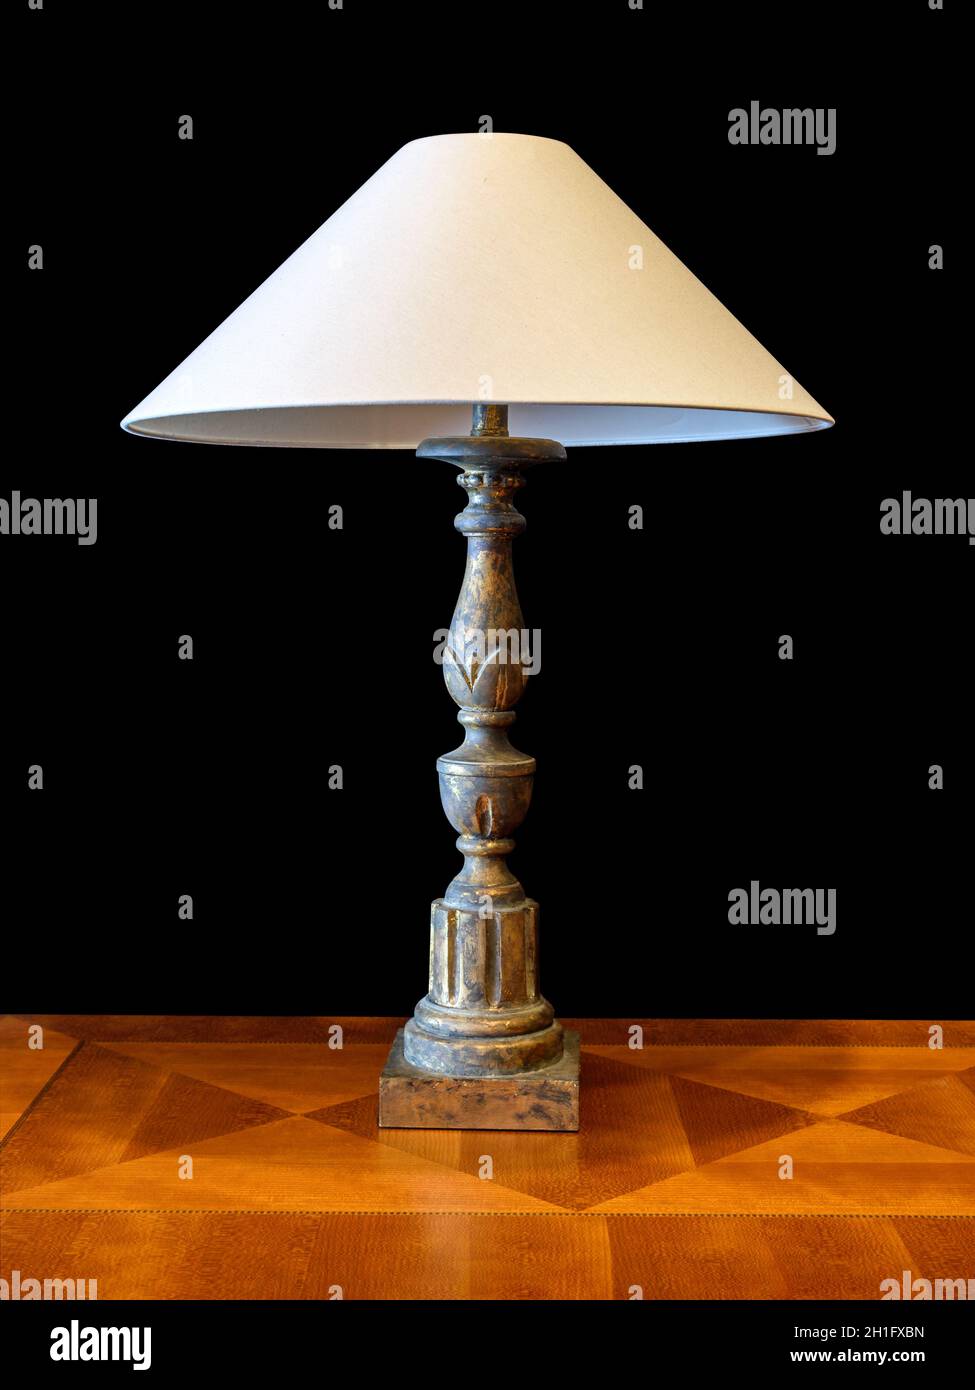 Alte Patina-Lampe aus Messing mit Lampenschirm aus Stoff, auf braunem Holz  mit geometrischem Furnier. Isoliert auf schwarzem Hintergrund,  Beschneidungspfad angeschlossen Stockfotografie - Alamy